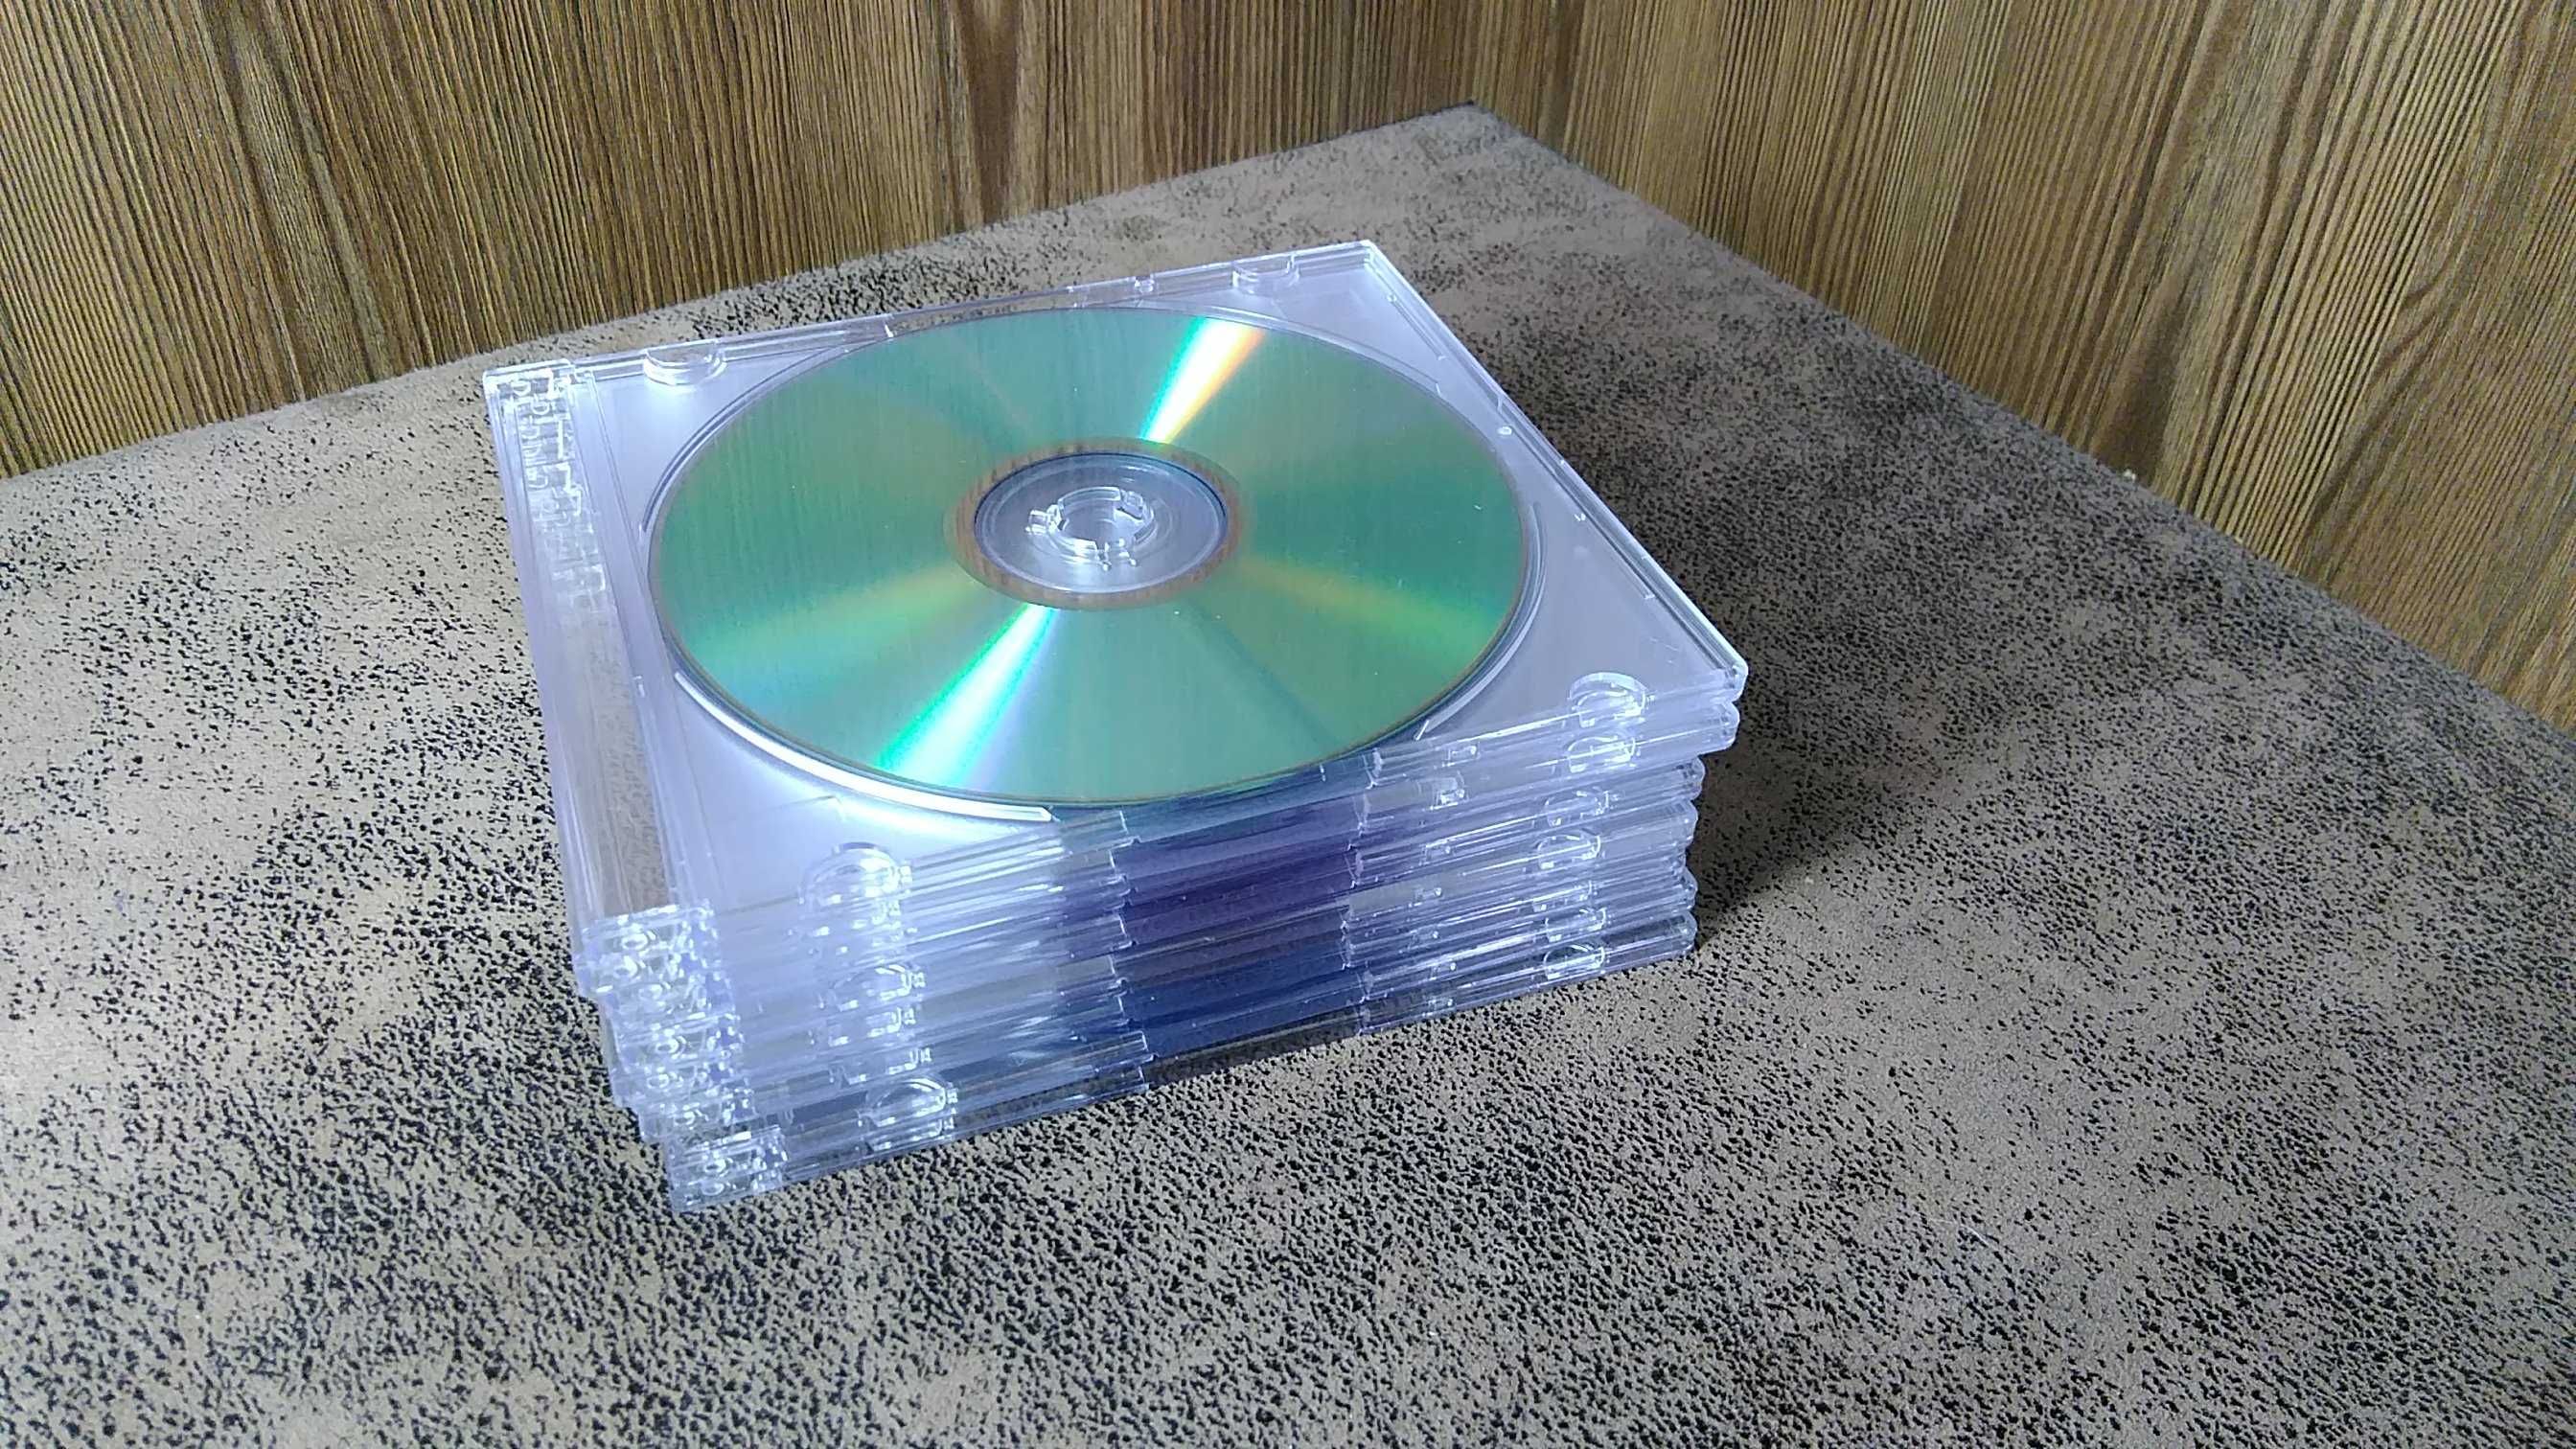 DVD диски TDK  фірмові японські. лот 10 шт кольорові